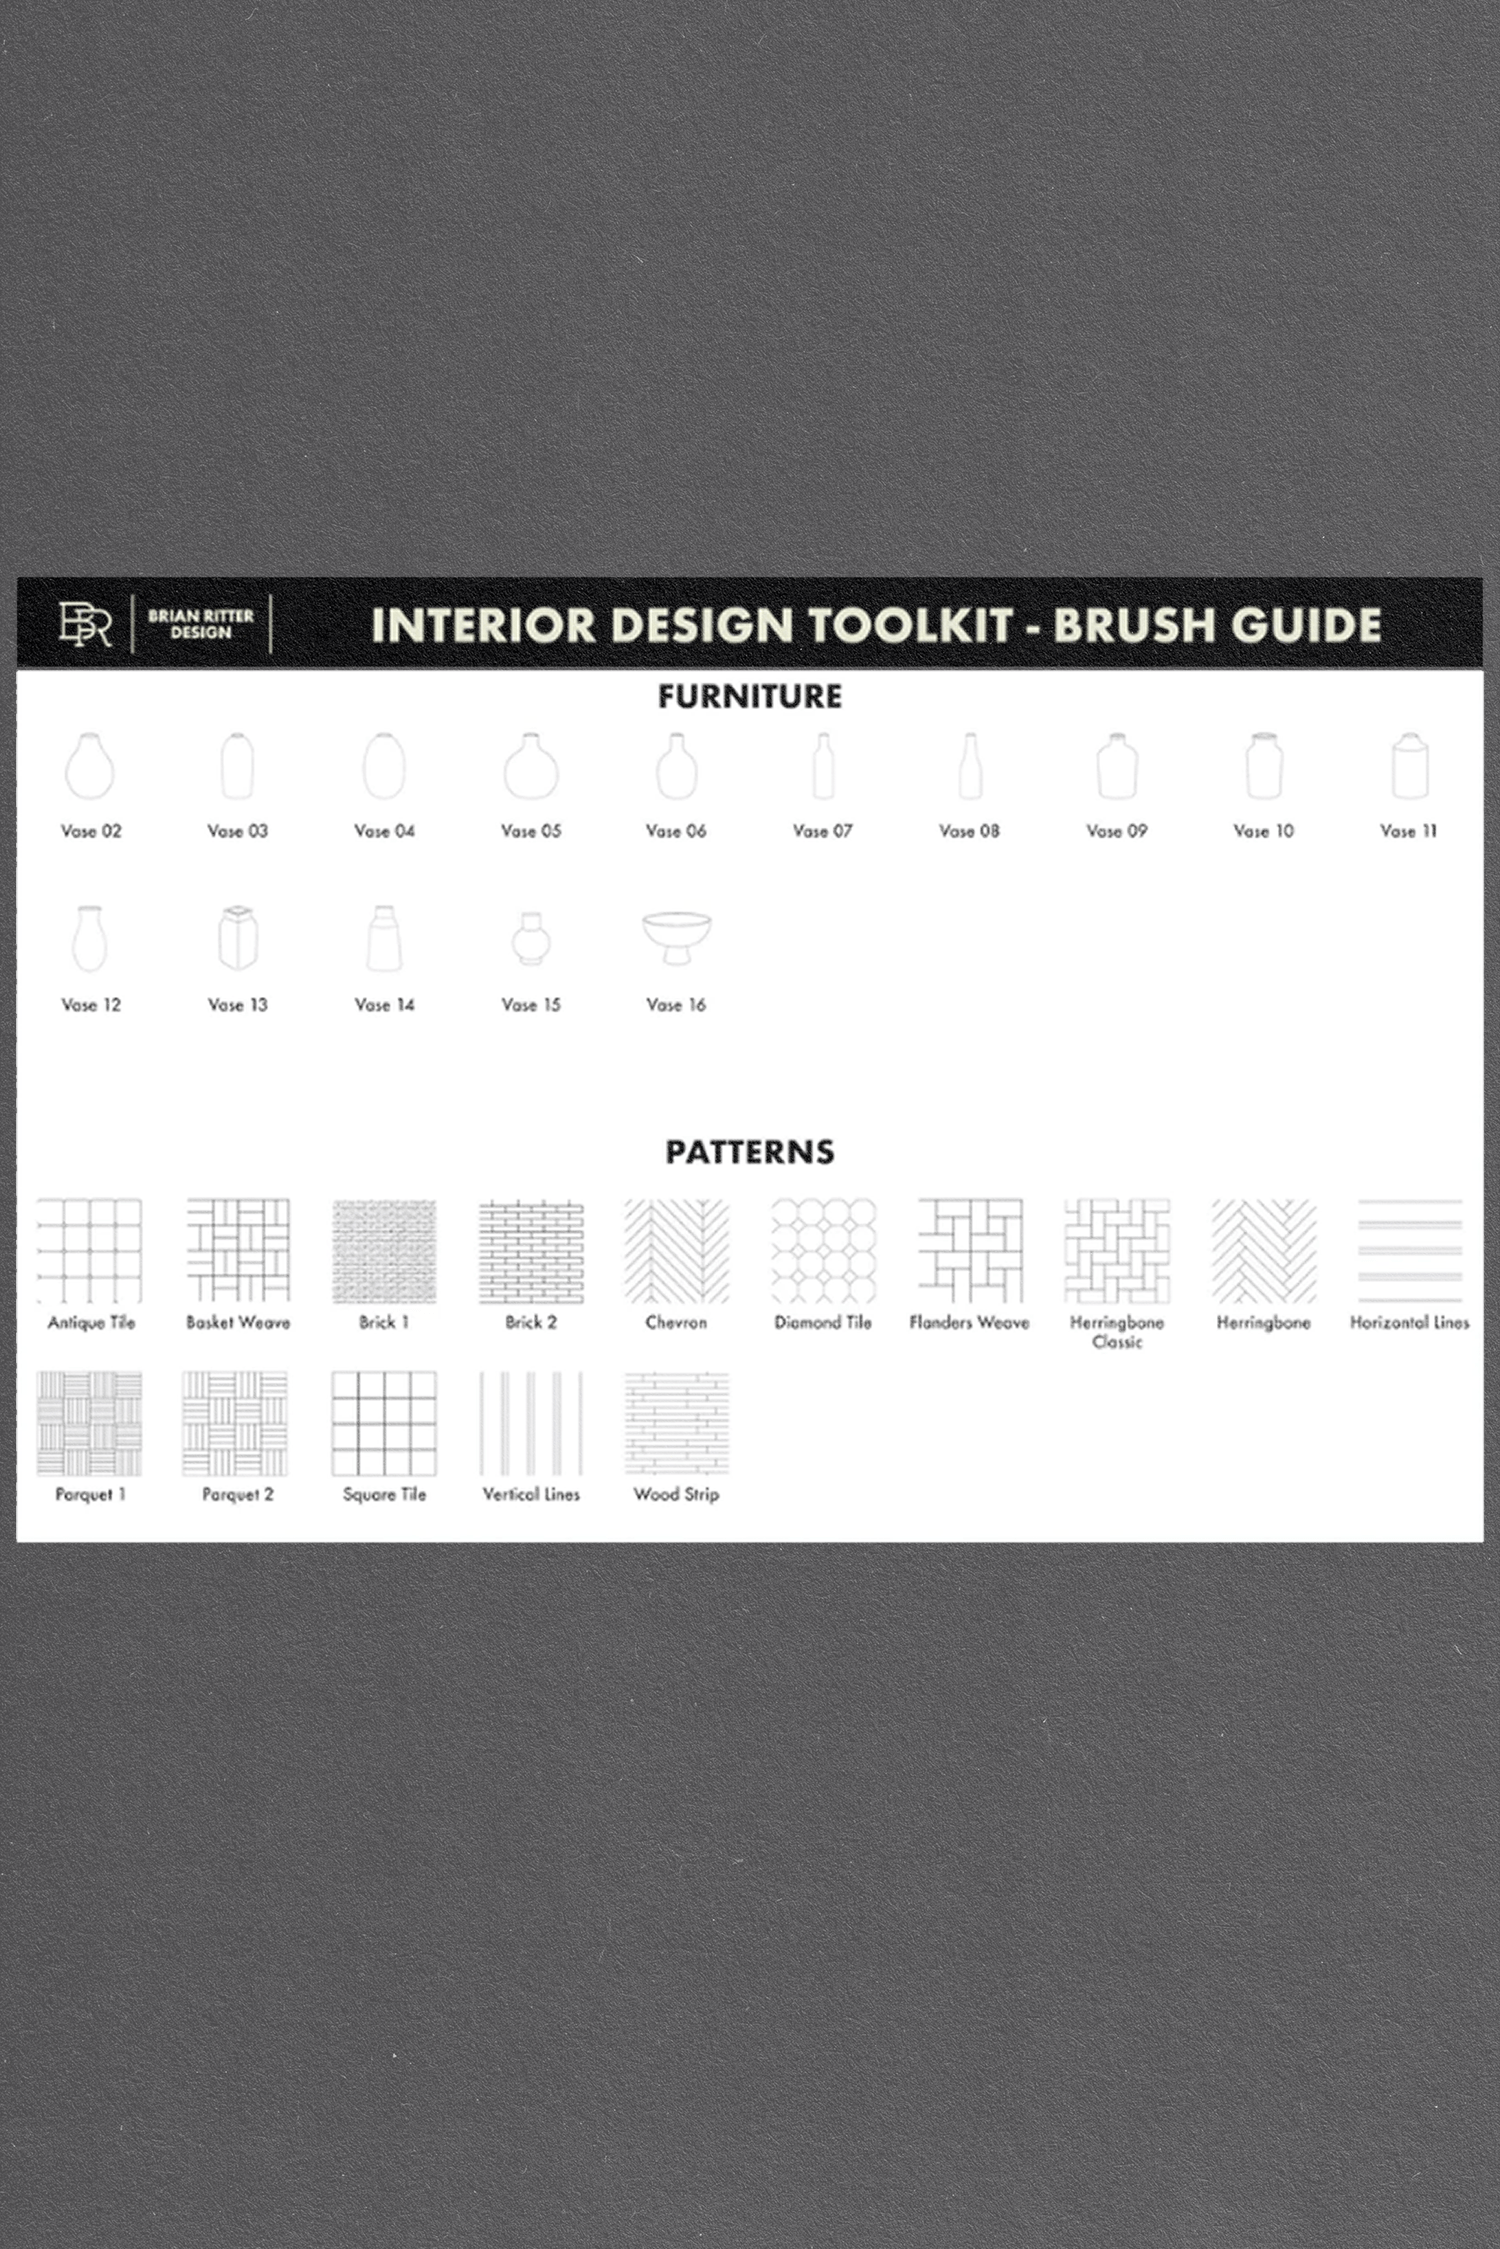 Interior Design ToolKit von Brian Ritter Design